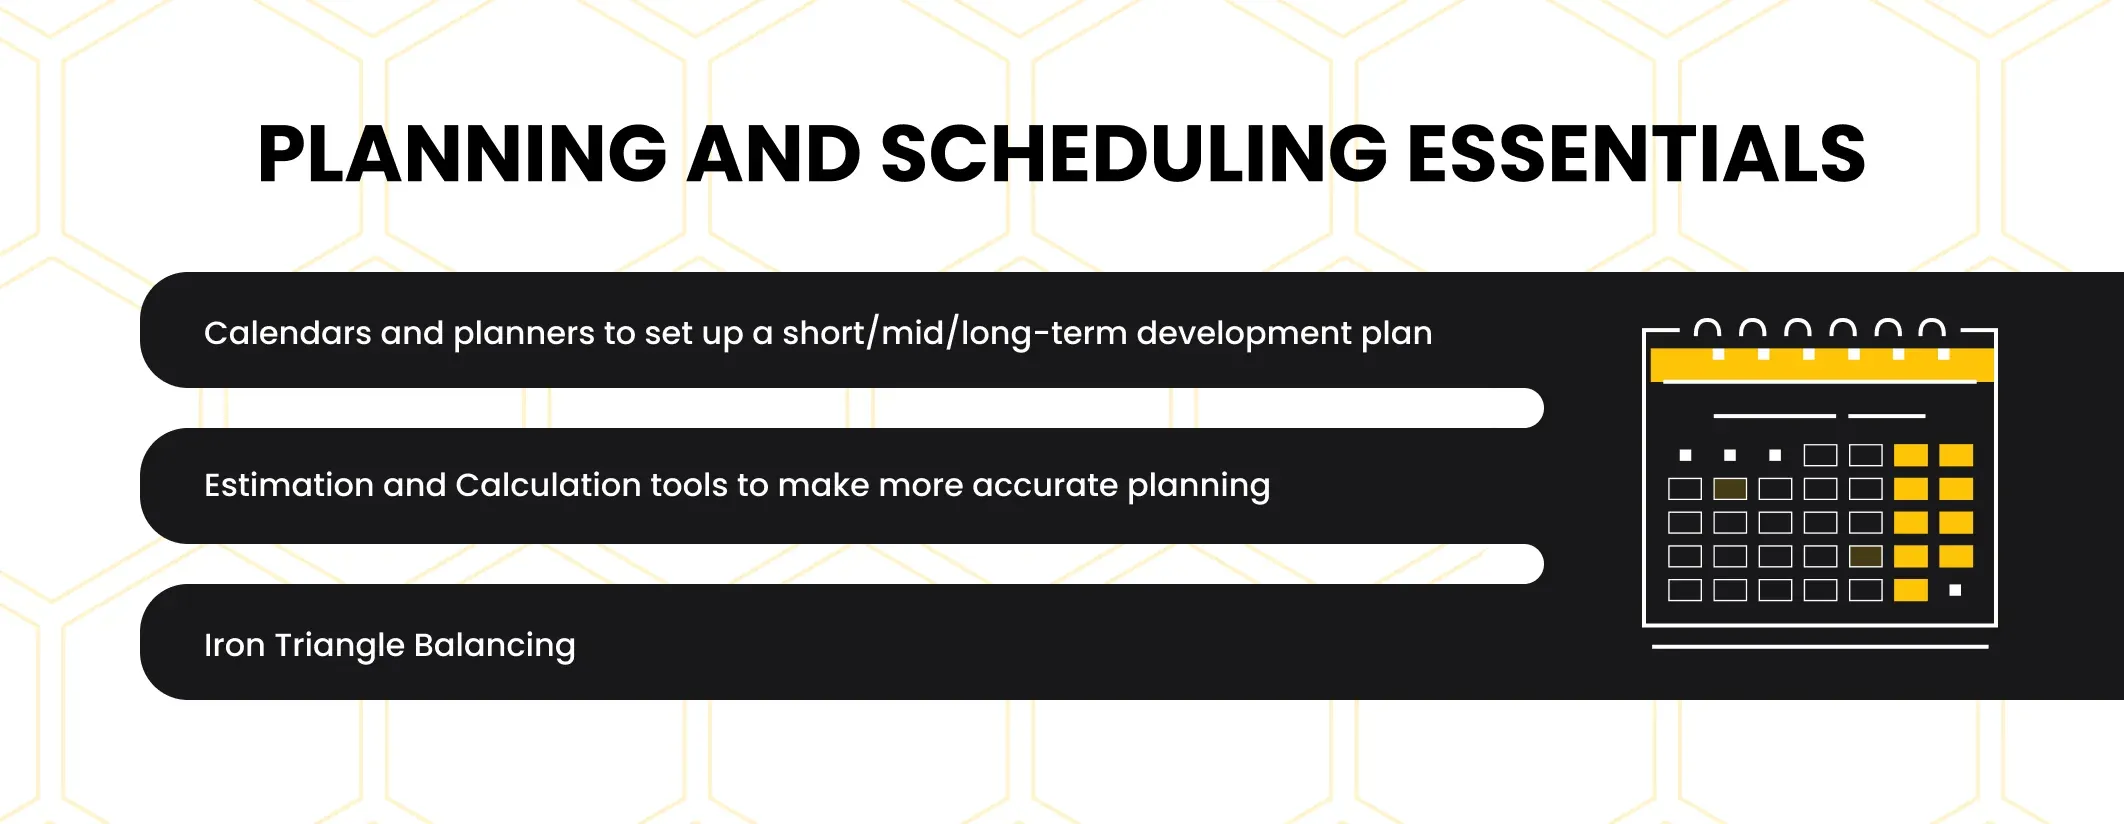 planning and scheduling essentials